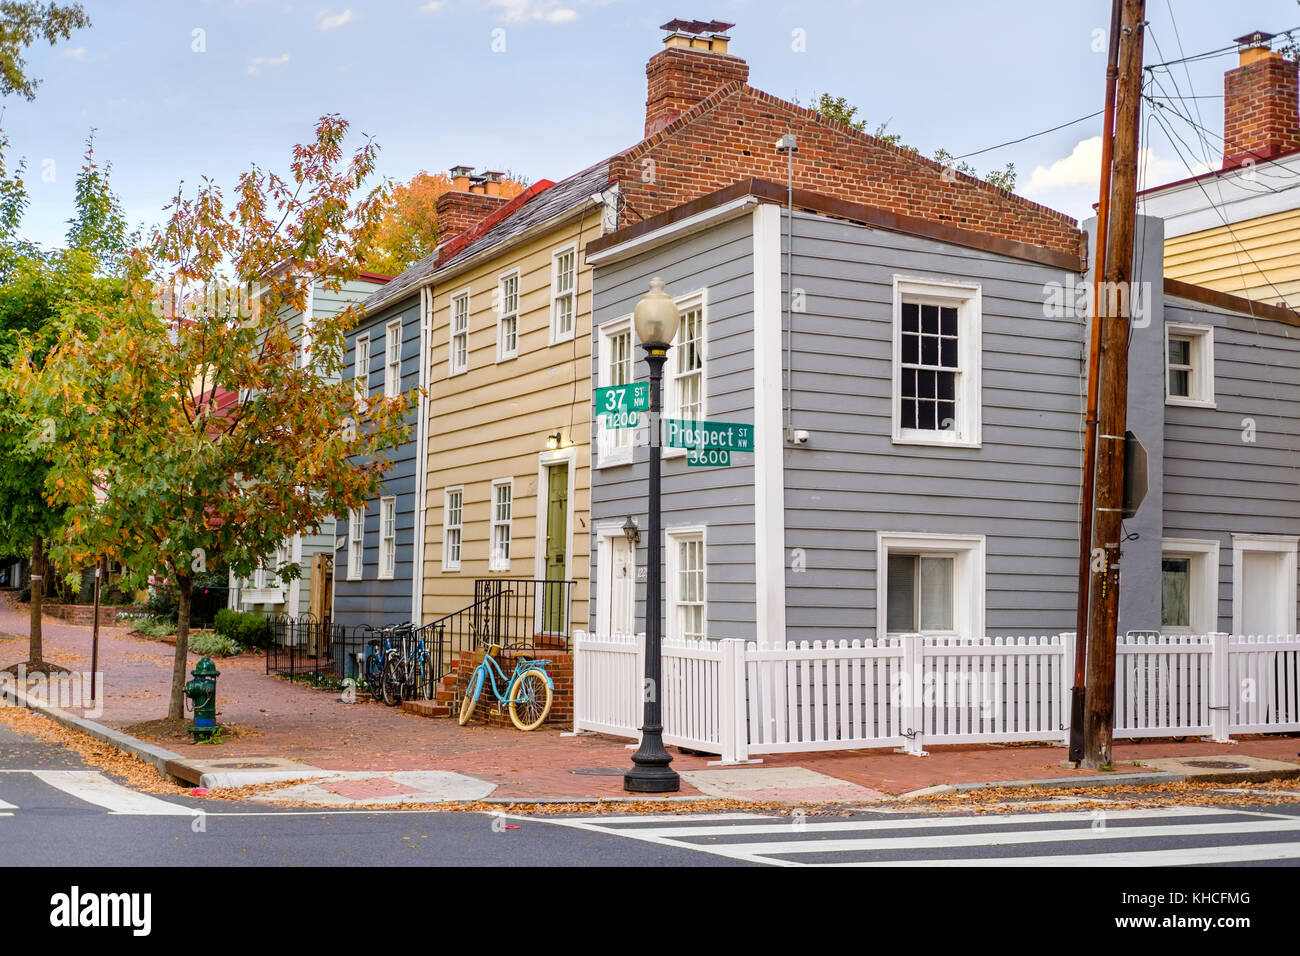 Vista de la calle de casas de estilo Cape Cod en la esquina de prospect St NW y 37 St NW en el barrio histórico de Georgetown, Washington, D.C., Estados Unidos. Foto de stock